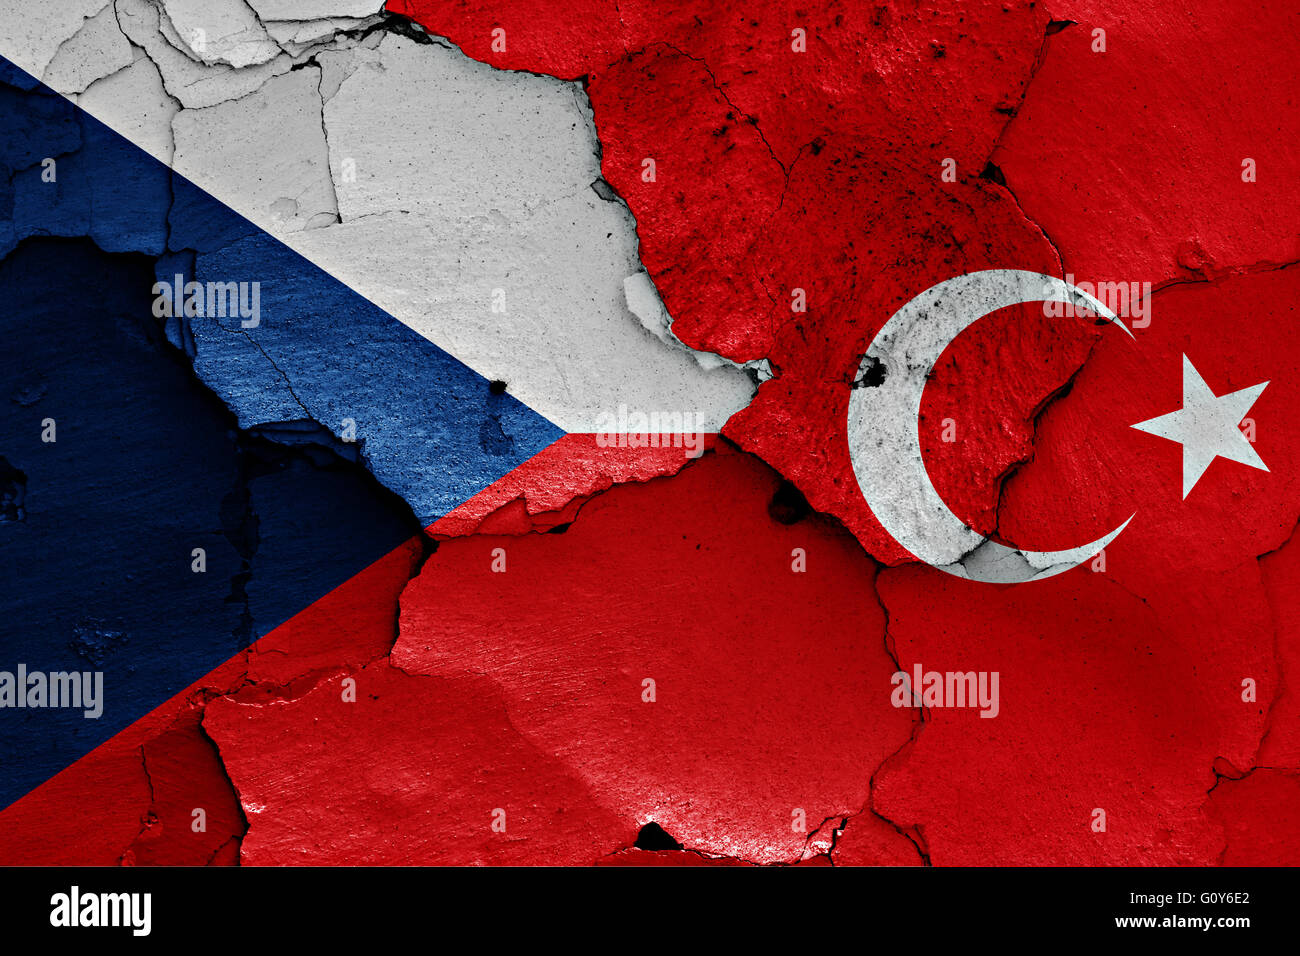 Flaggen Der Tschechischen Republik Und Der Turkei Auf Rissige Wand Gemalt Stockfotografie Alamy